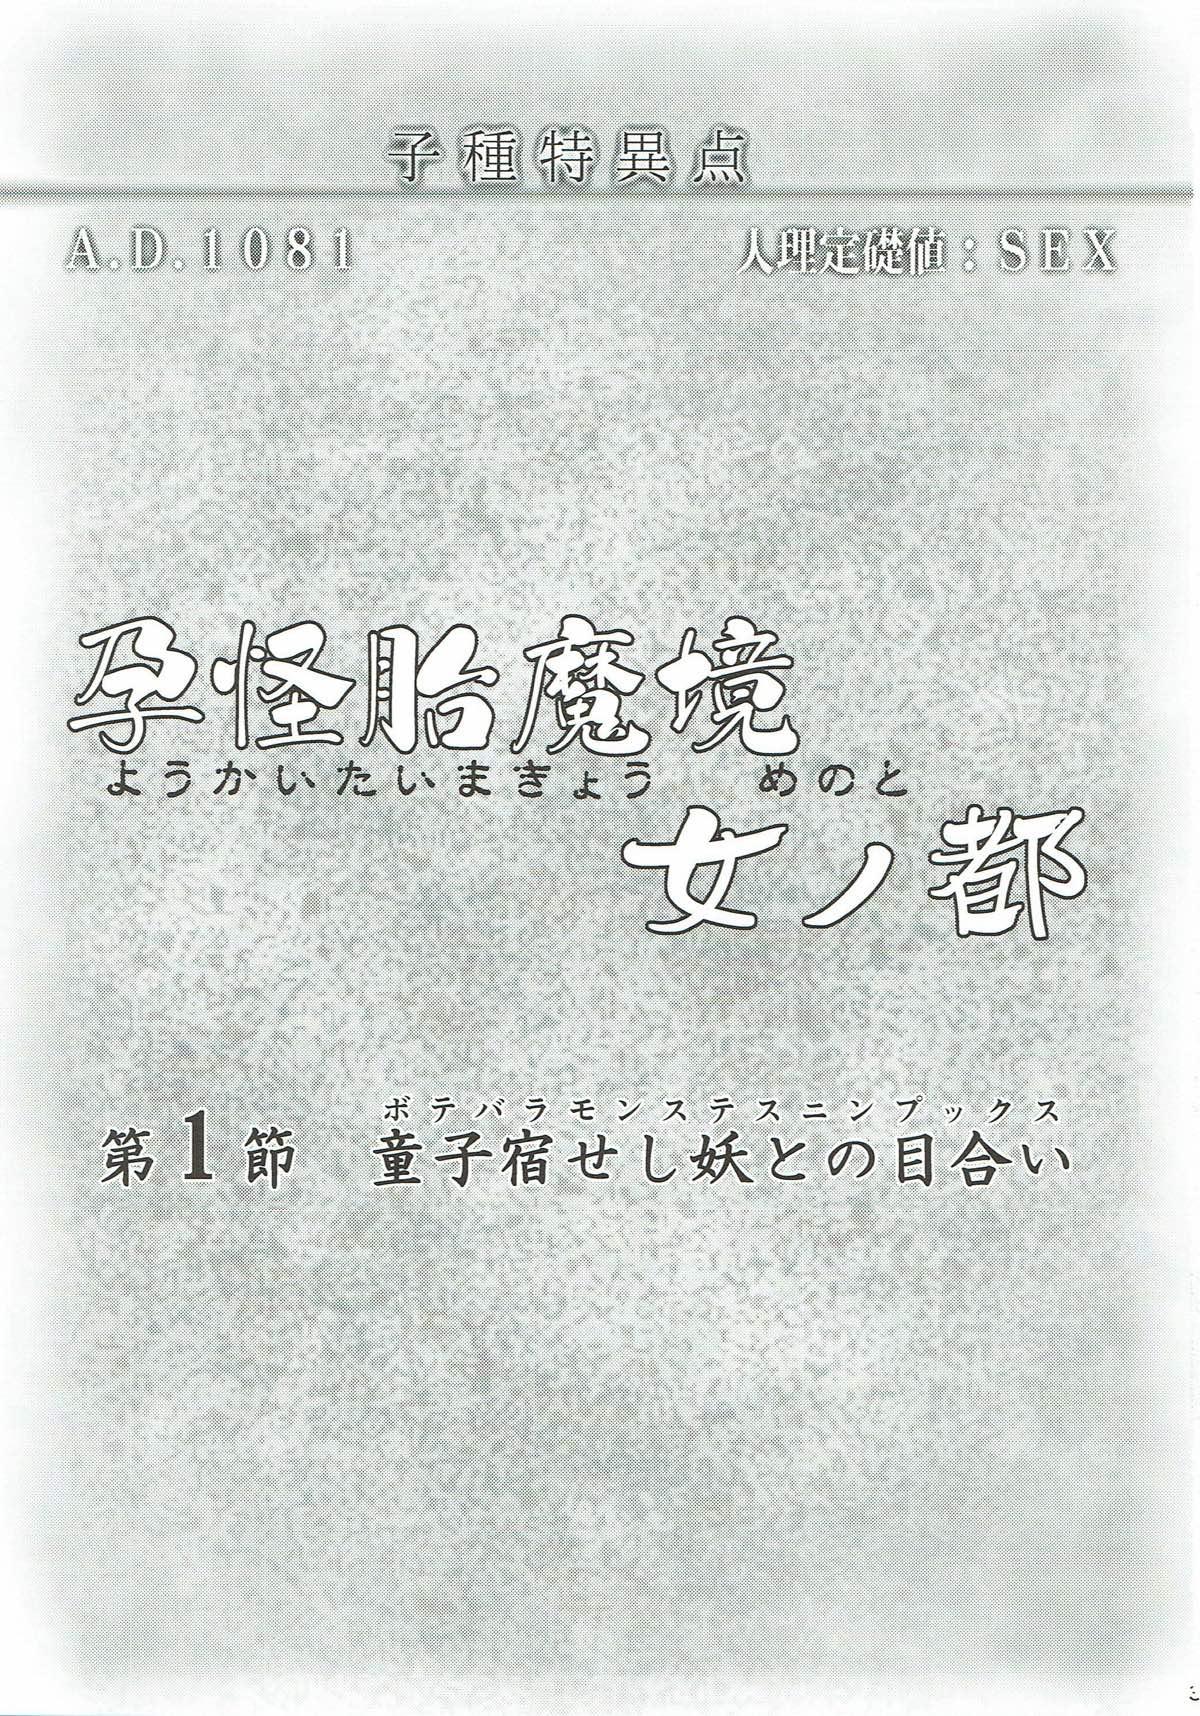 Pasivo Youkaitai Makyou Me no To Daiissetsu Botebara Monstess Ninpux - Fate grand order Redbone - Page 2